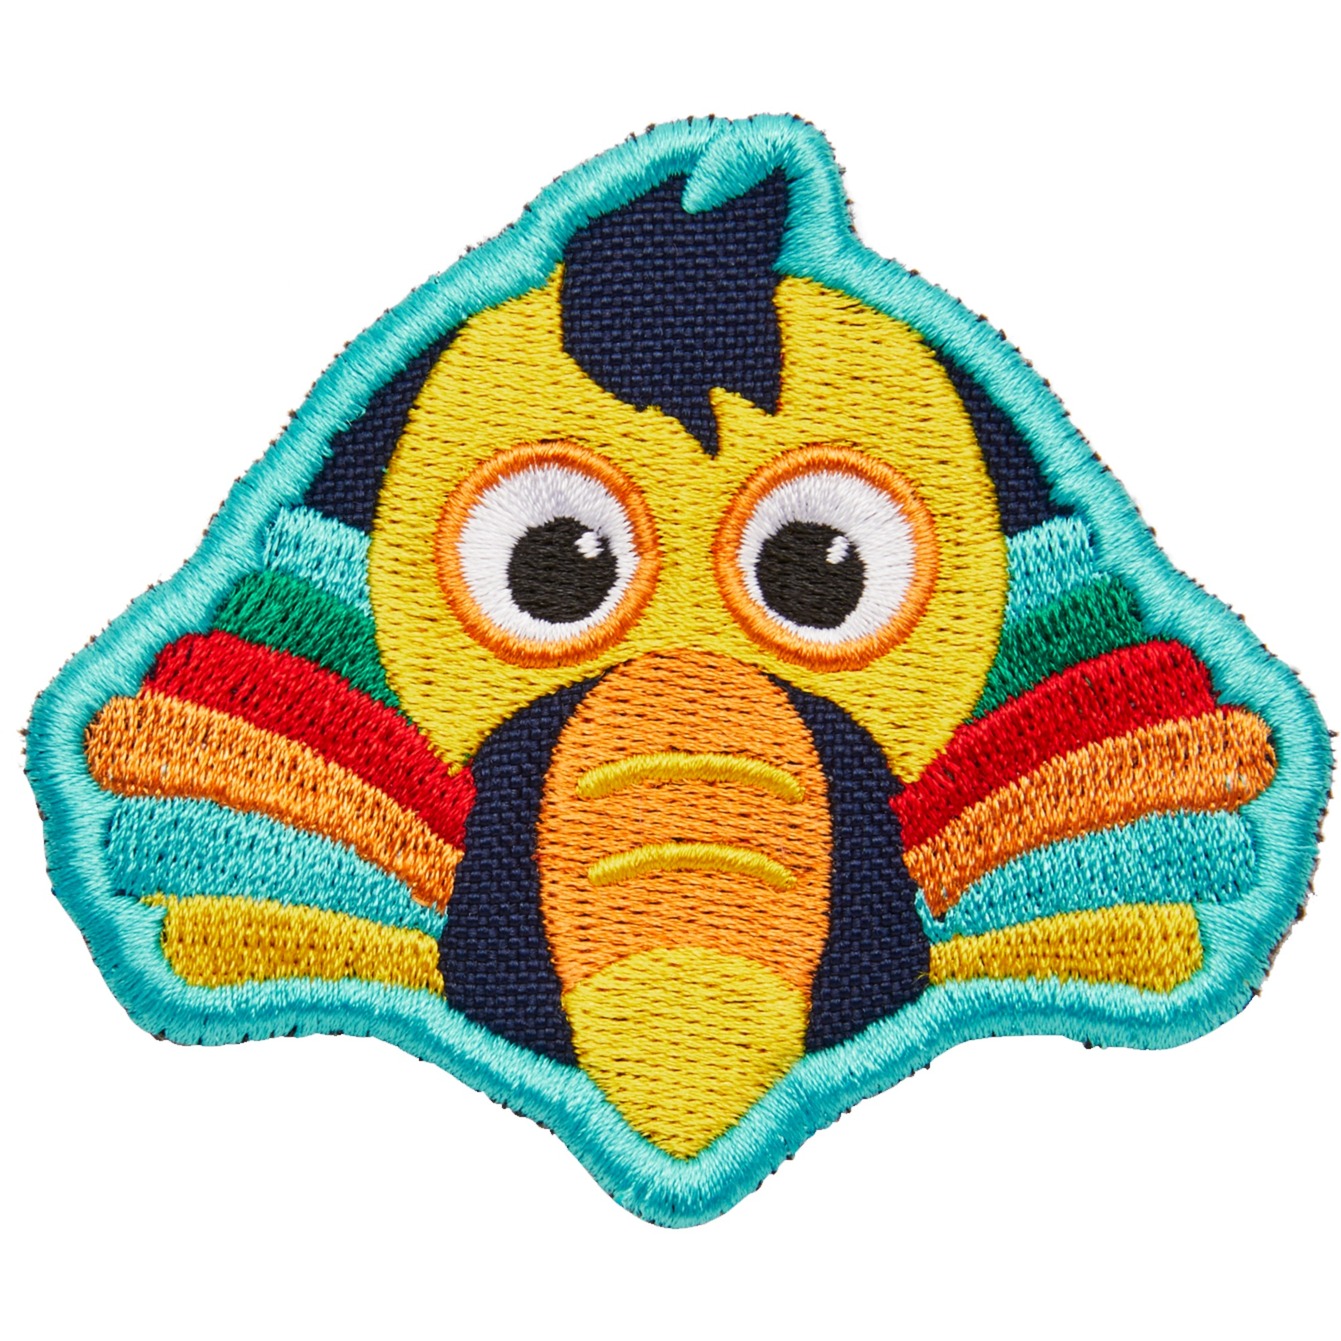 Image of Alternate - Klett-Badge Tukan, Patch online einkaufen bei Alternate